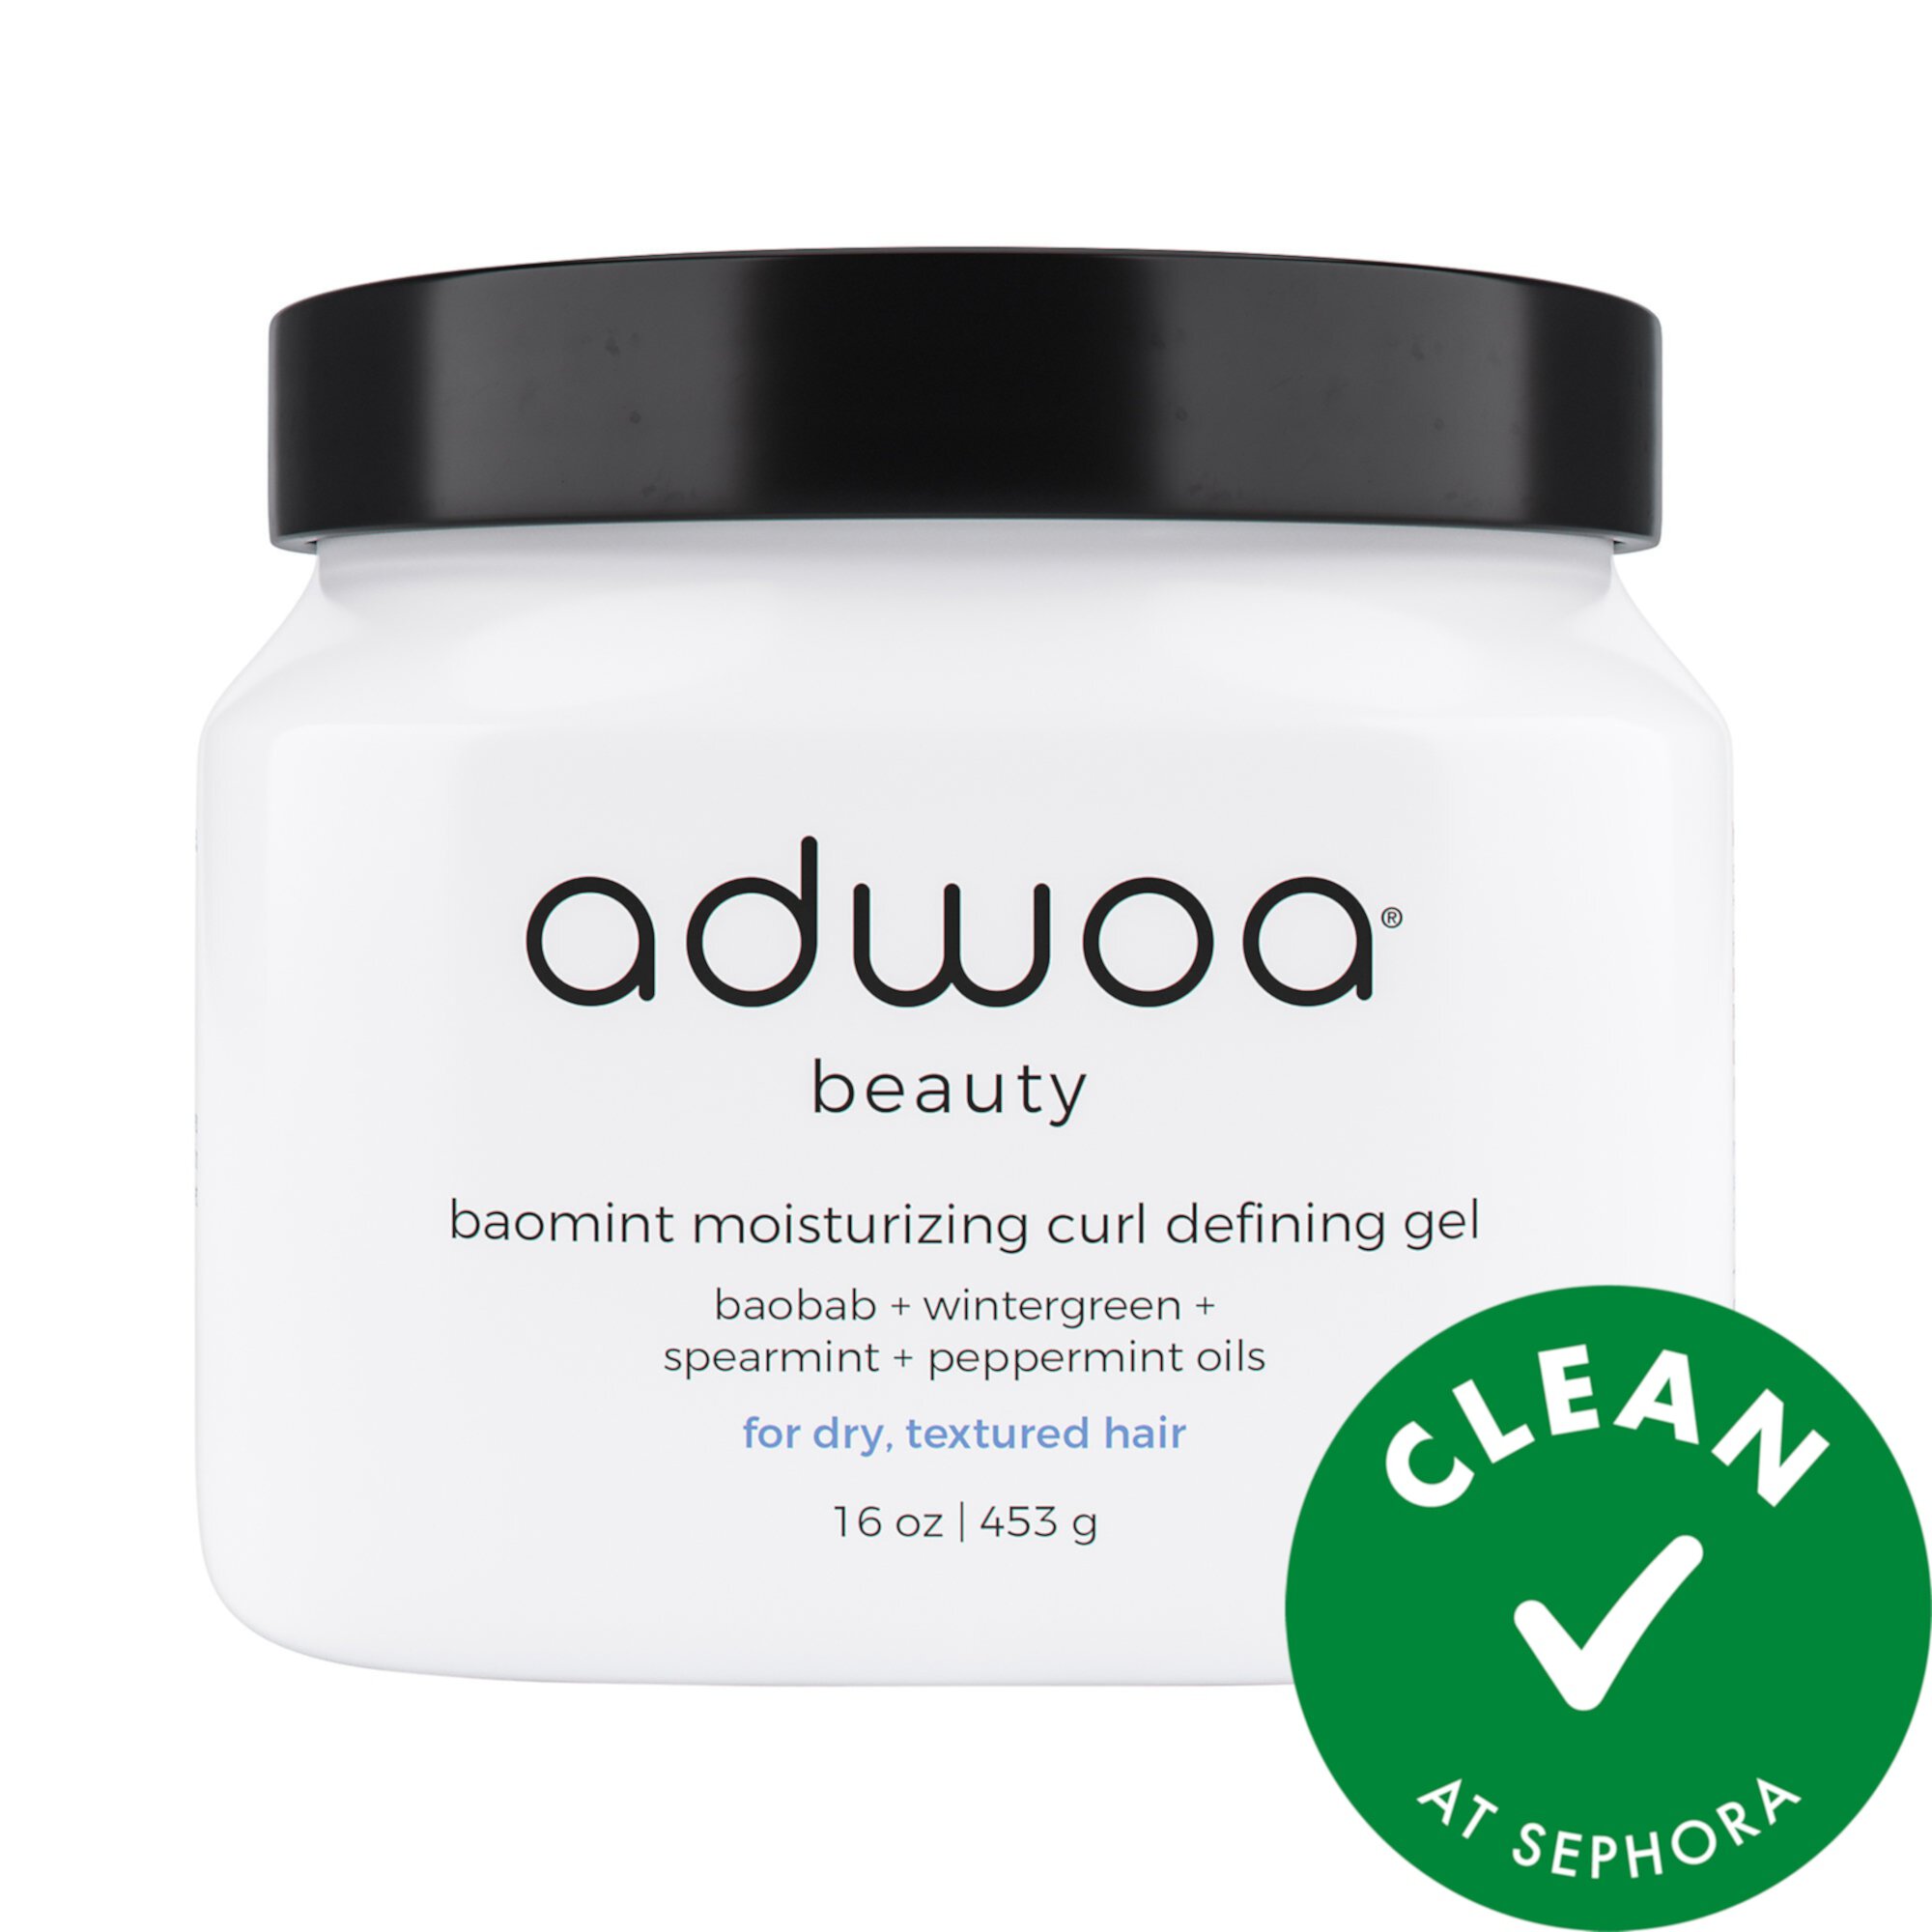 Baomint™ Moisturizing Curl Defining Gel Adwoa beauty